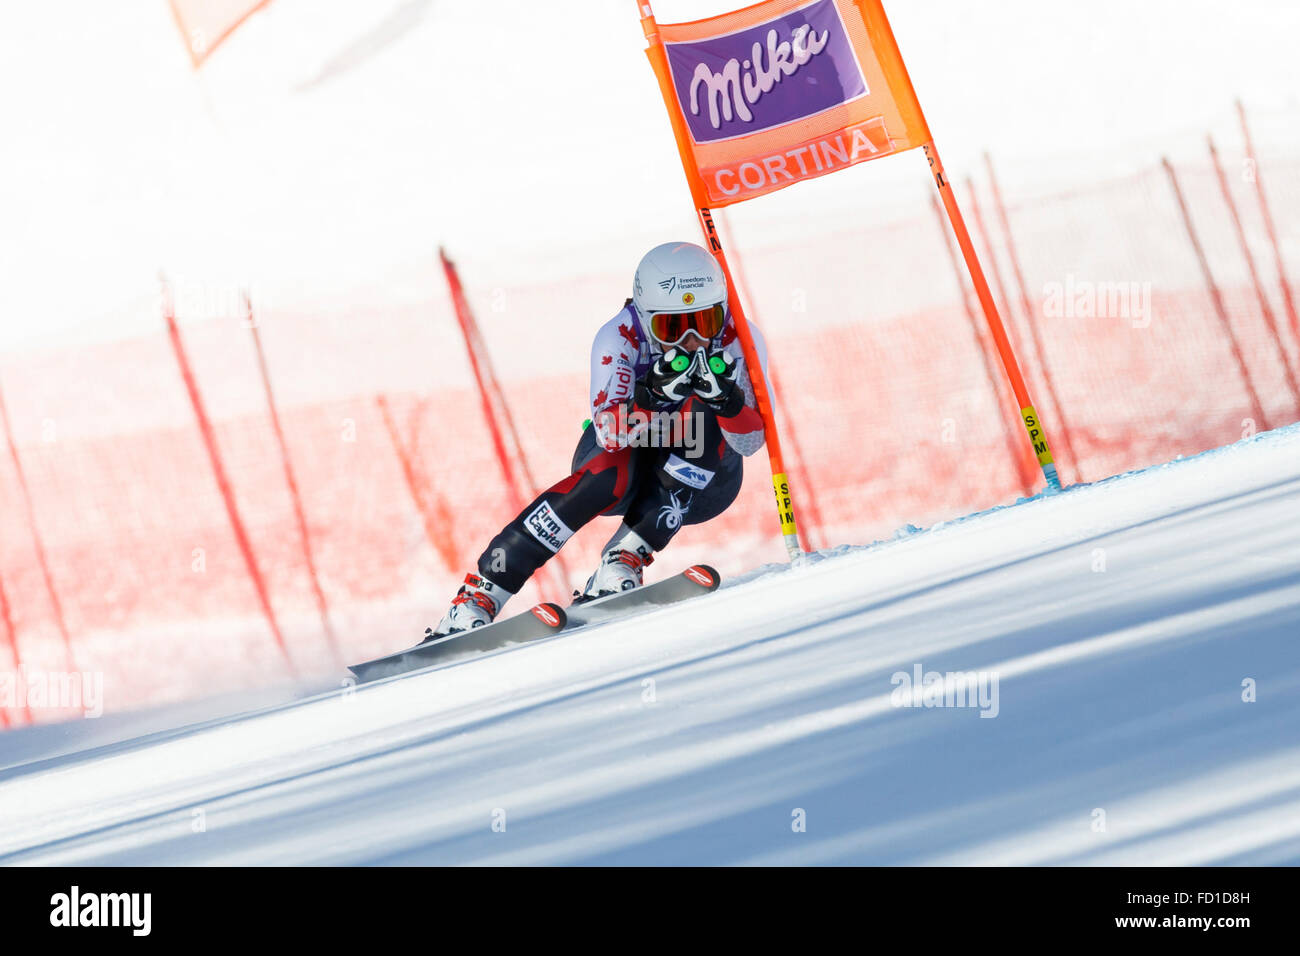 Cortina d ' Ampezzo, Italien 23. Januar 2016. YURKIW Larisa (Can) im Wettbewerb mit der Audi Fis Alpine Ski World Cup Women-downhill-Rennen auf der Olympia-Kurs in der Bergkette der Dolomiten. Stockfoto